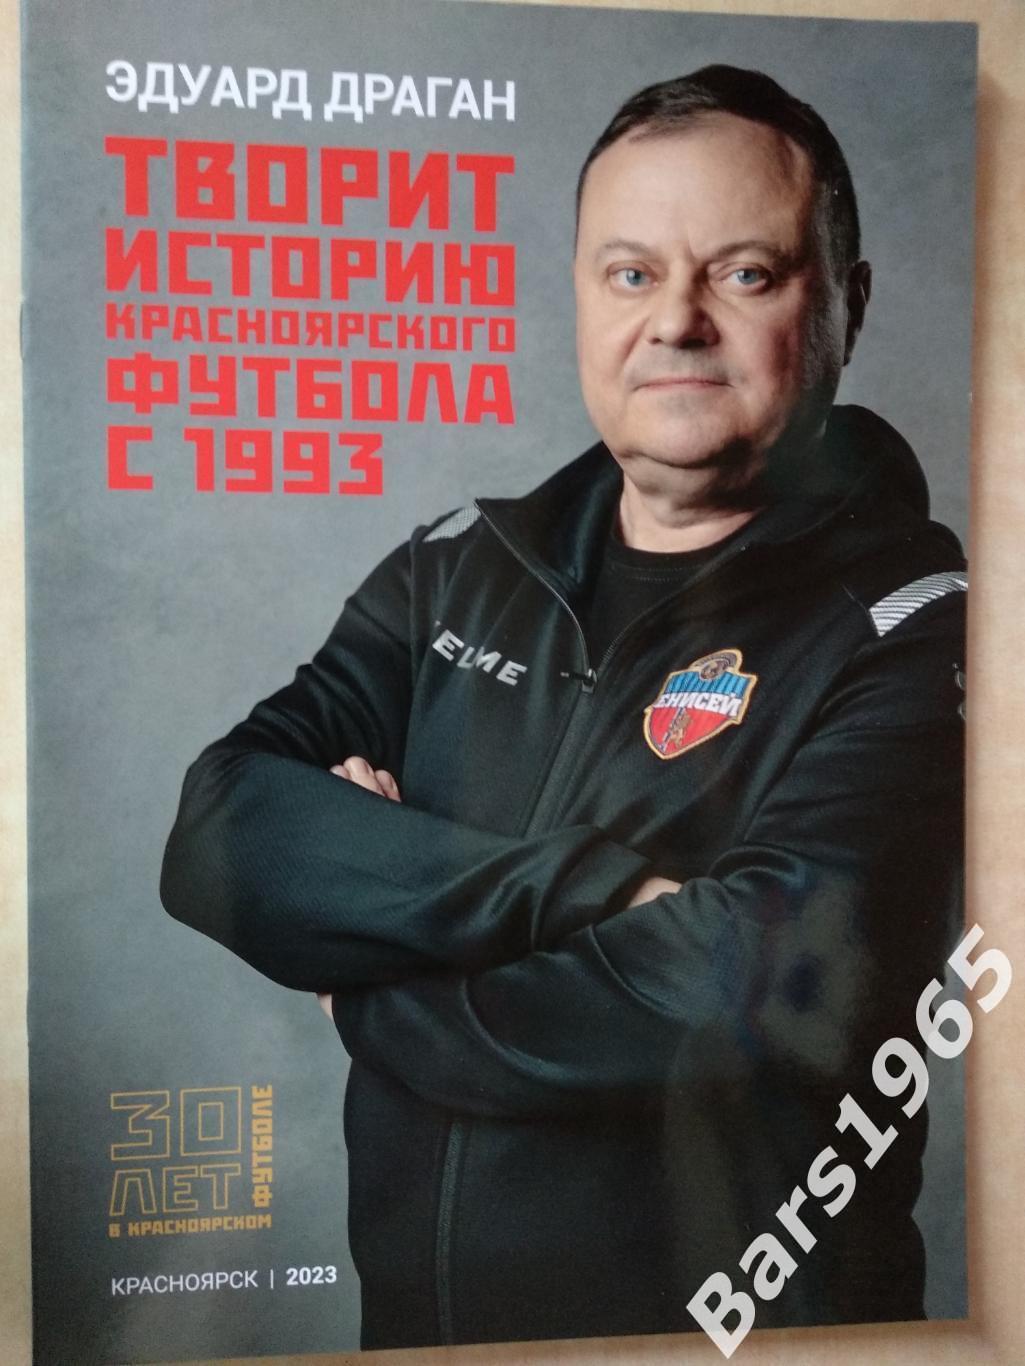 Эдуард Драган 30 лет в красноярском футболе